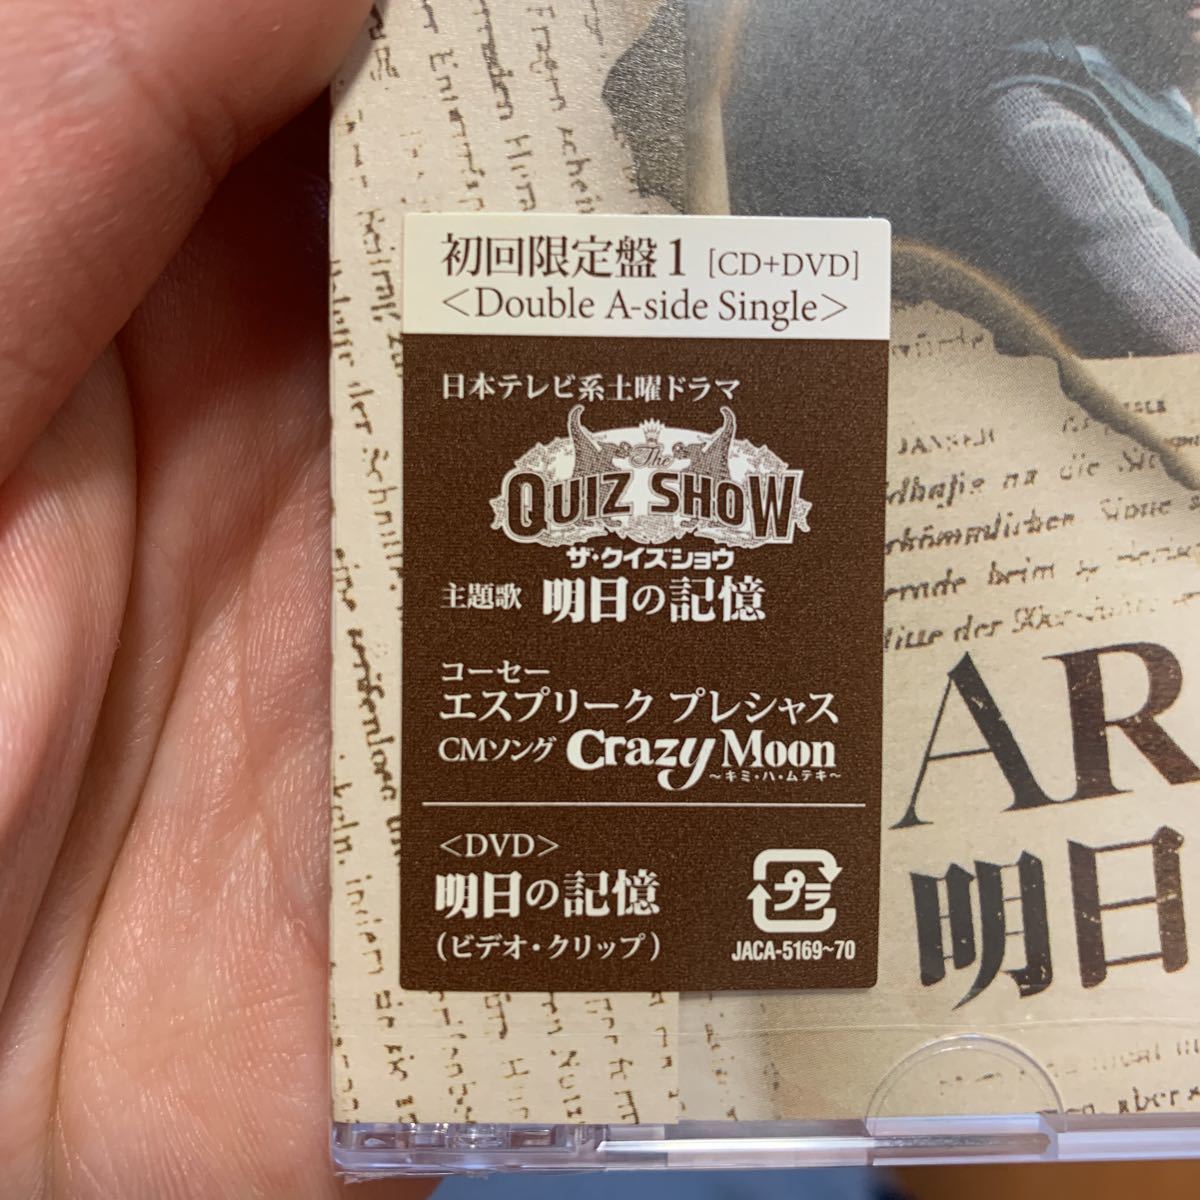 ARASHI 嵐 明日の記憶/Crazy Moon 初回限定盤1 CD+DVD 明日の記憶 ビデオ・クリップ付き 新品未開封 ザ・クイズショウ主題歌_画像3